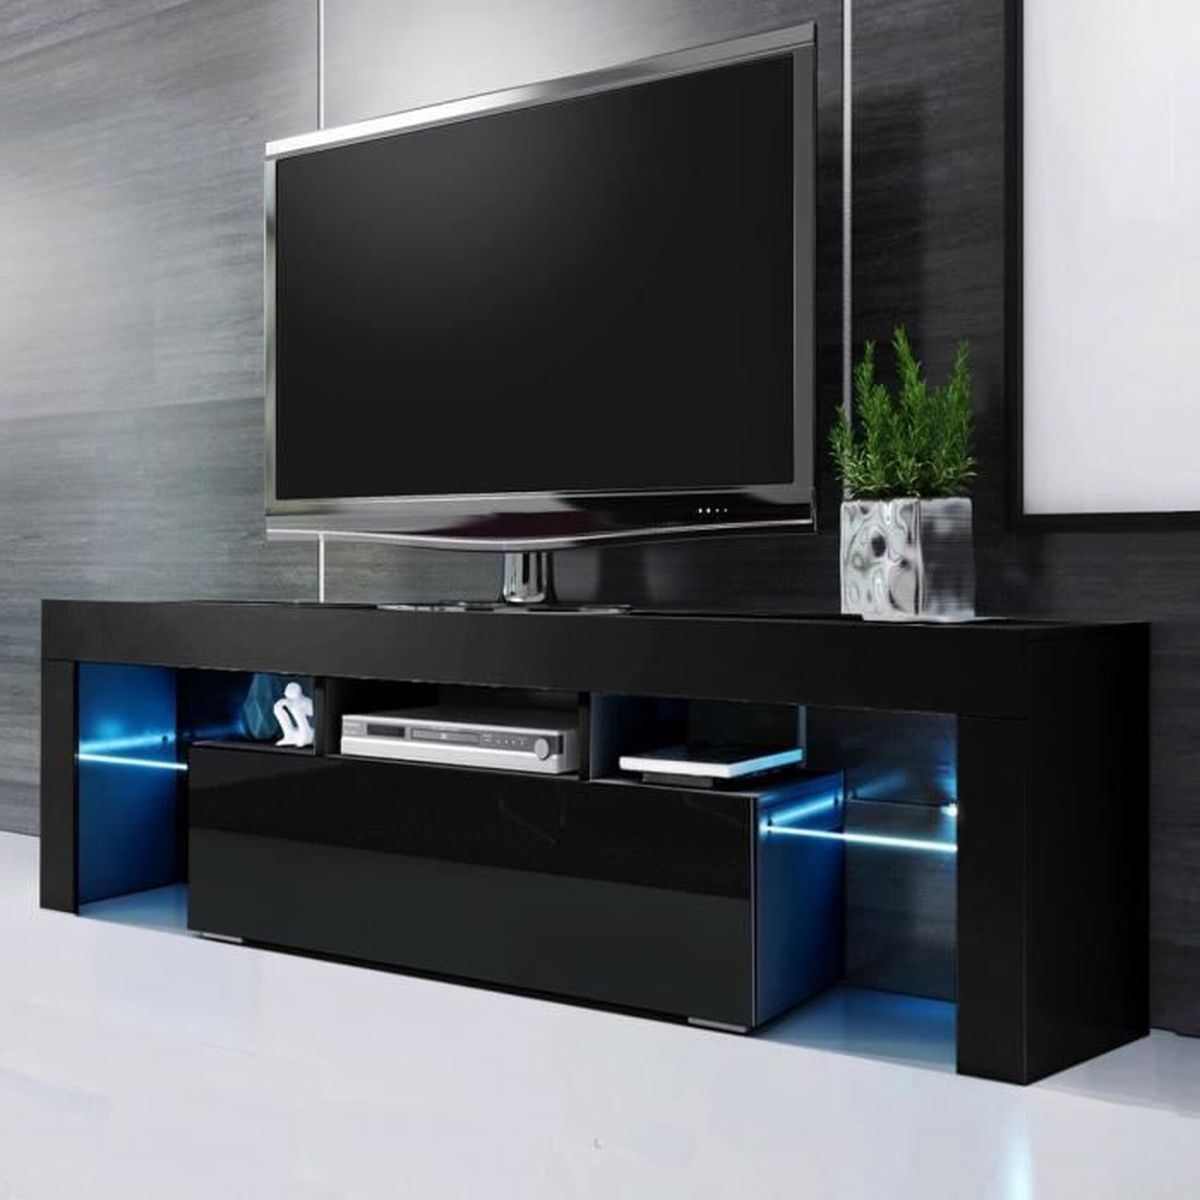 Meuble TV LED RVB 200 cm brillant avant RVB Meuble TV moderne LED Salon Meuble TV Design blanc